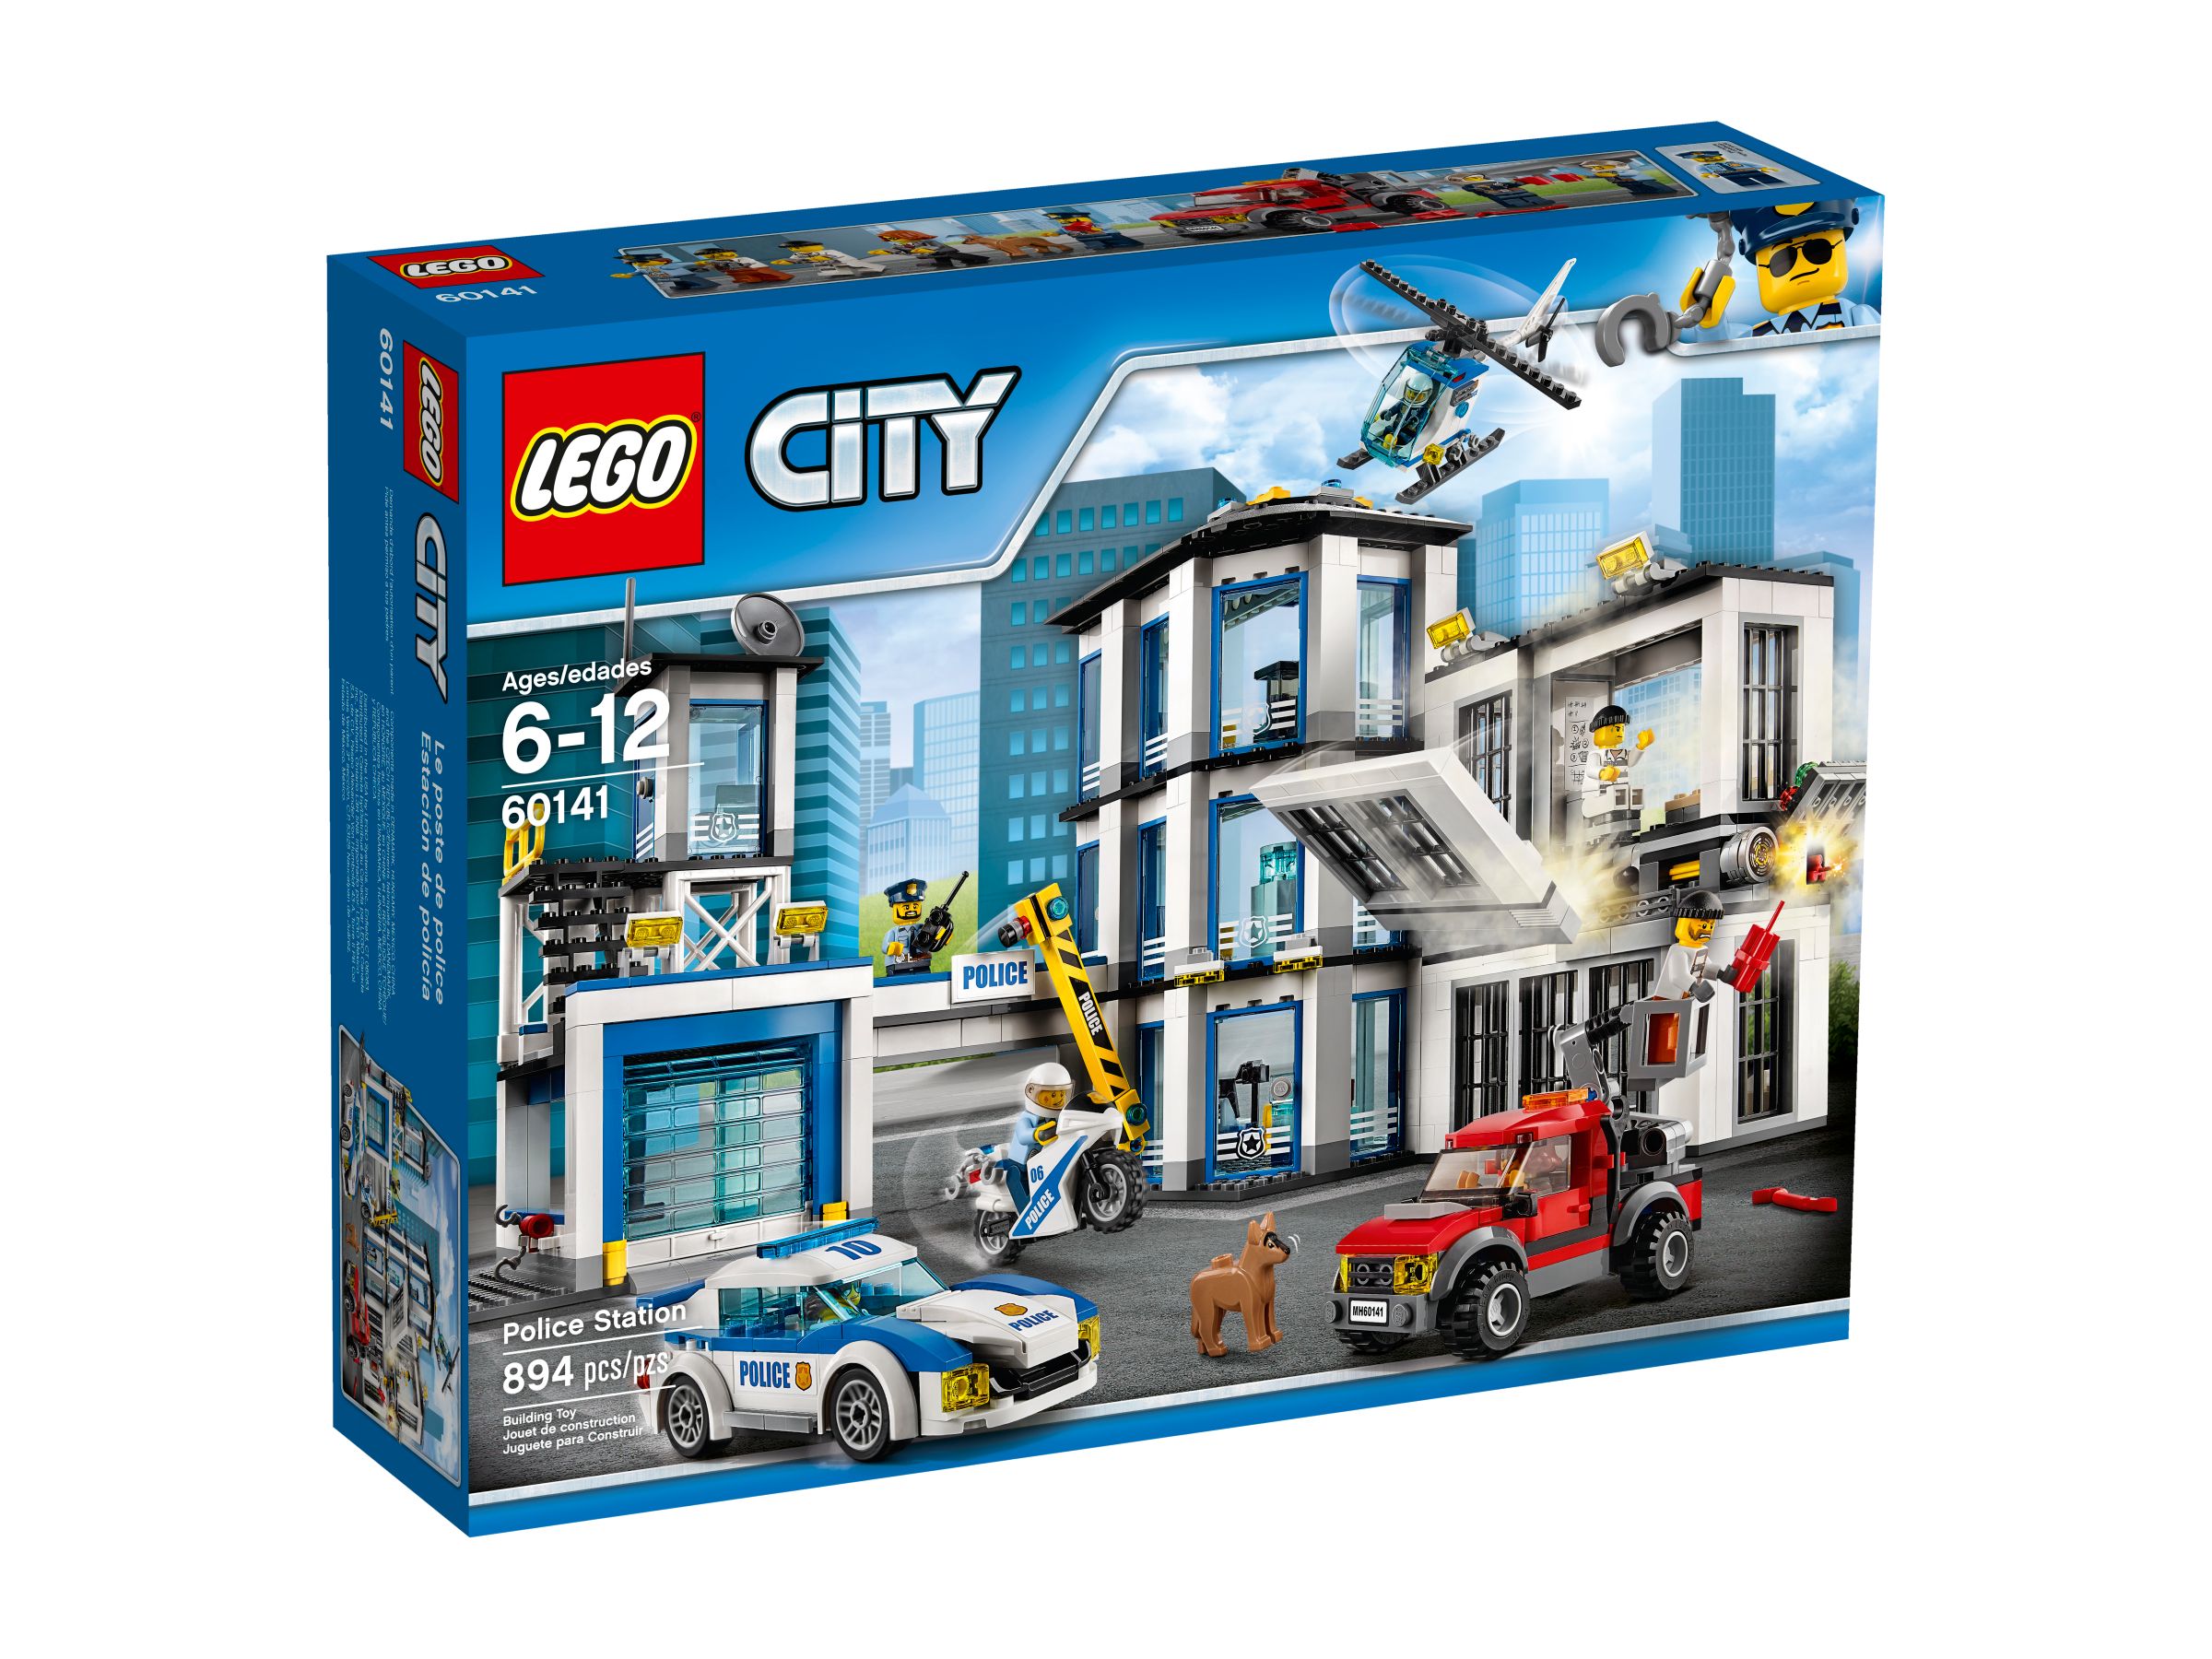 LEGO City 60141 Polizeiwache LEGO_60141_alt1.jpg